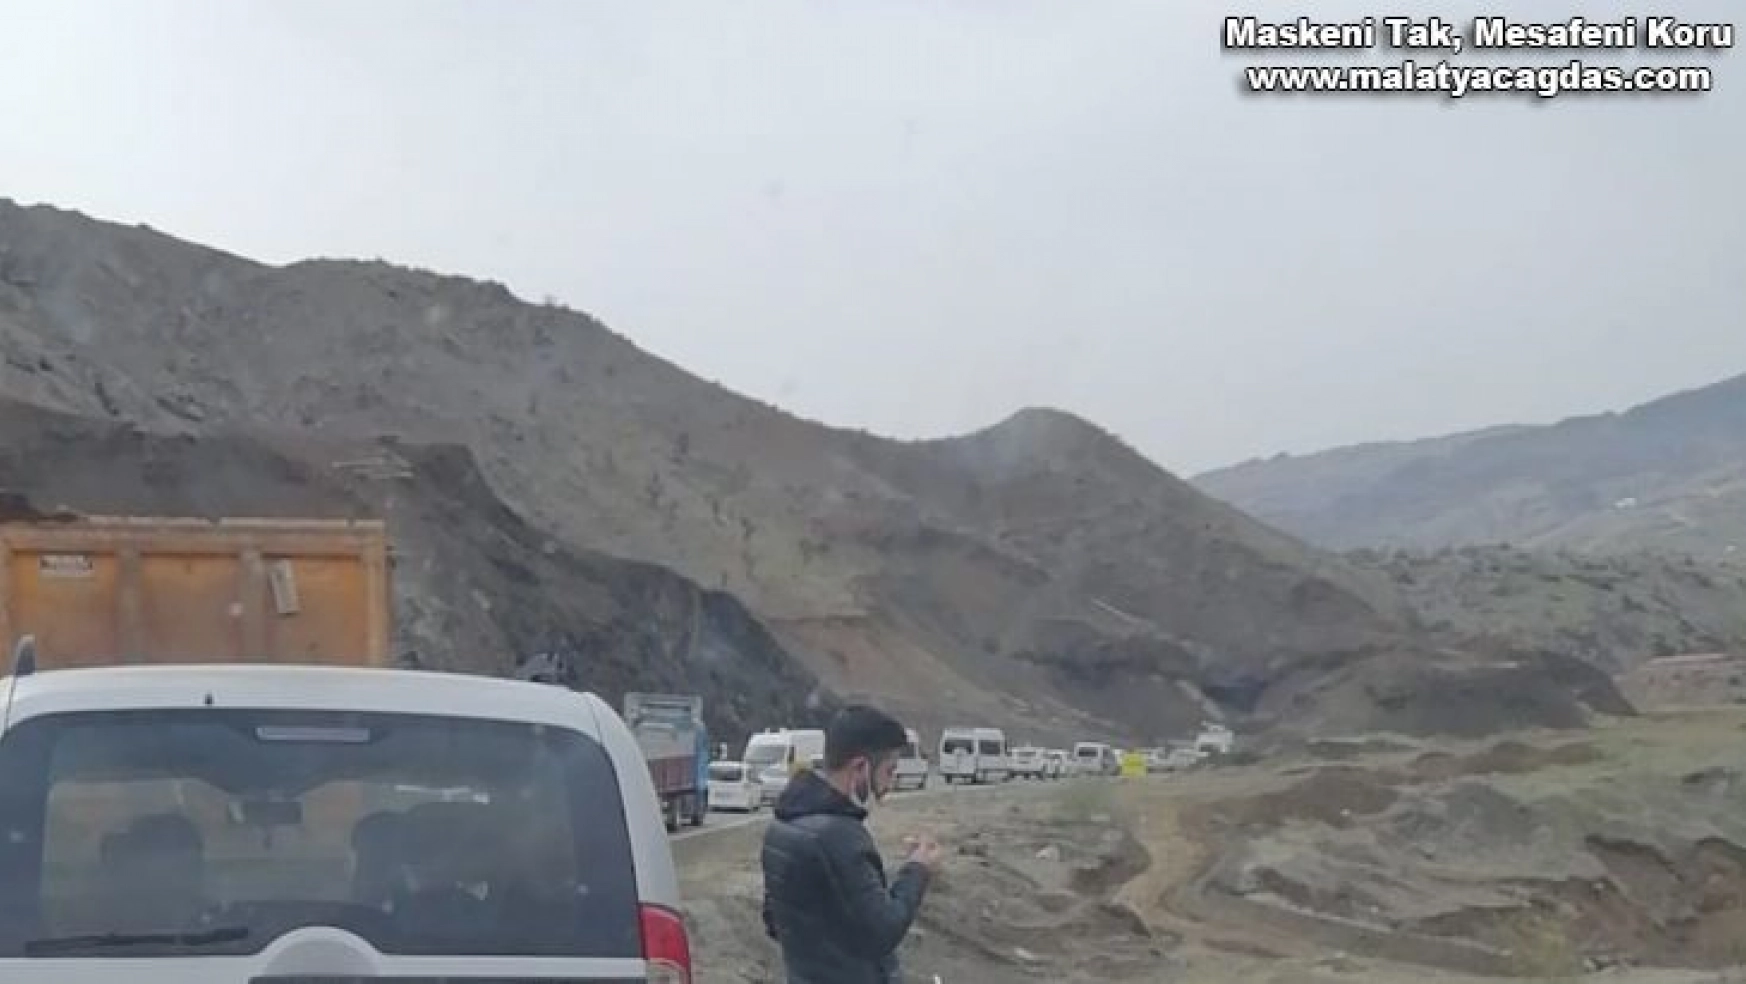 Dev kayalar Adıyaman- Malatya Karayolunu trafiğe kapattı